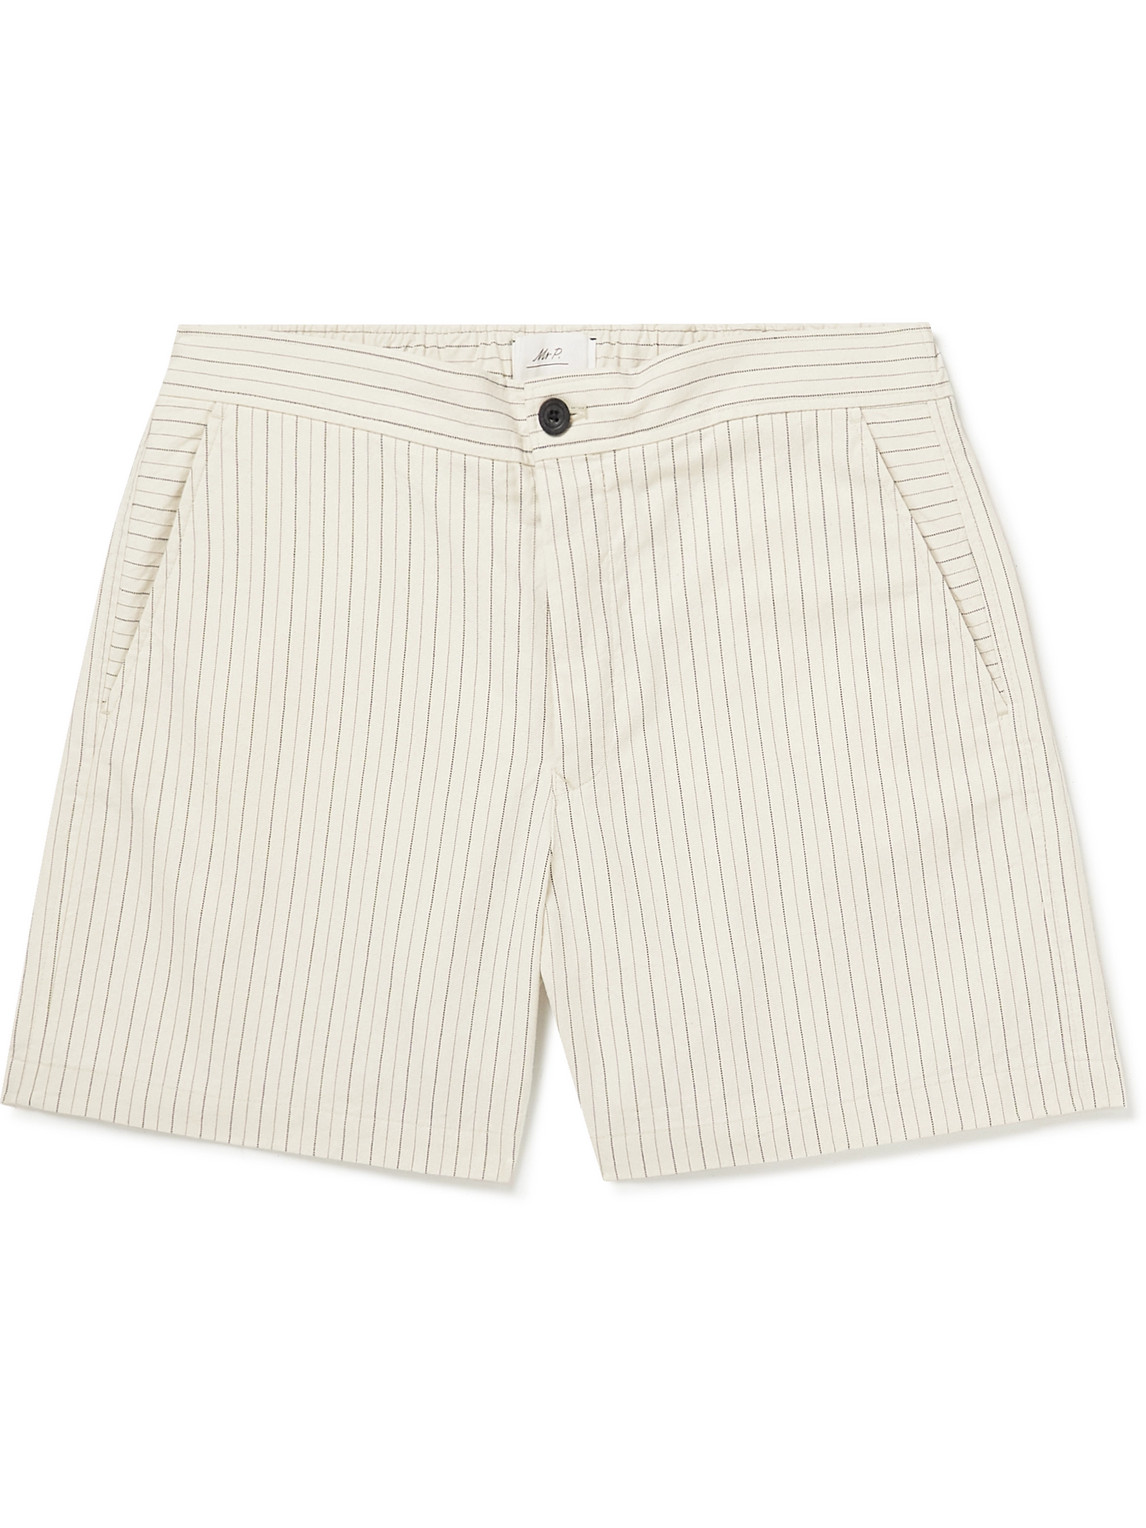 Mr P. - Pinstriped Cotton-Blend Twill Shorts - Men - White - 38 von Mr P.